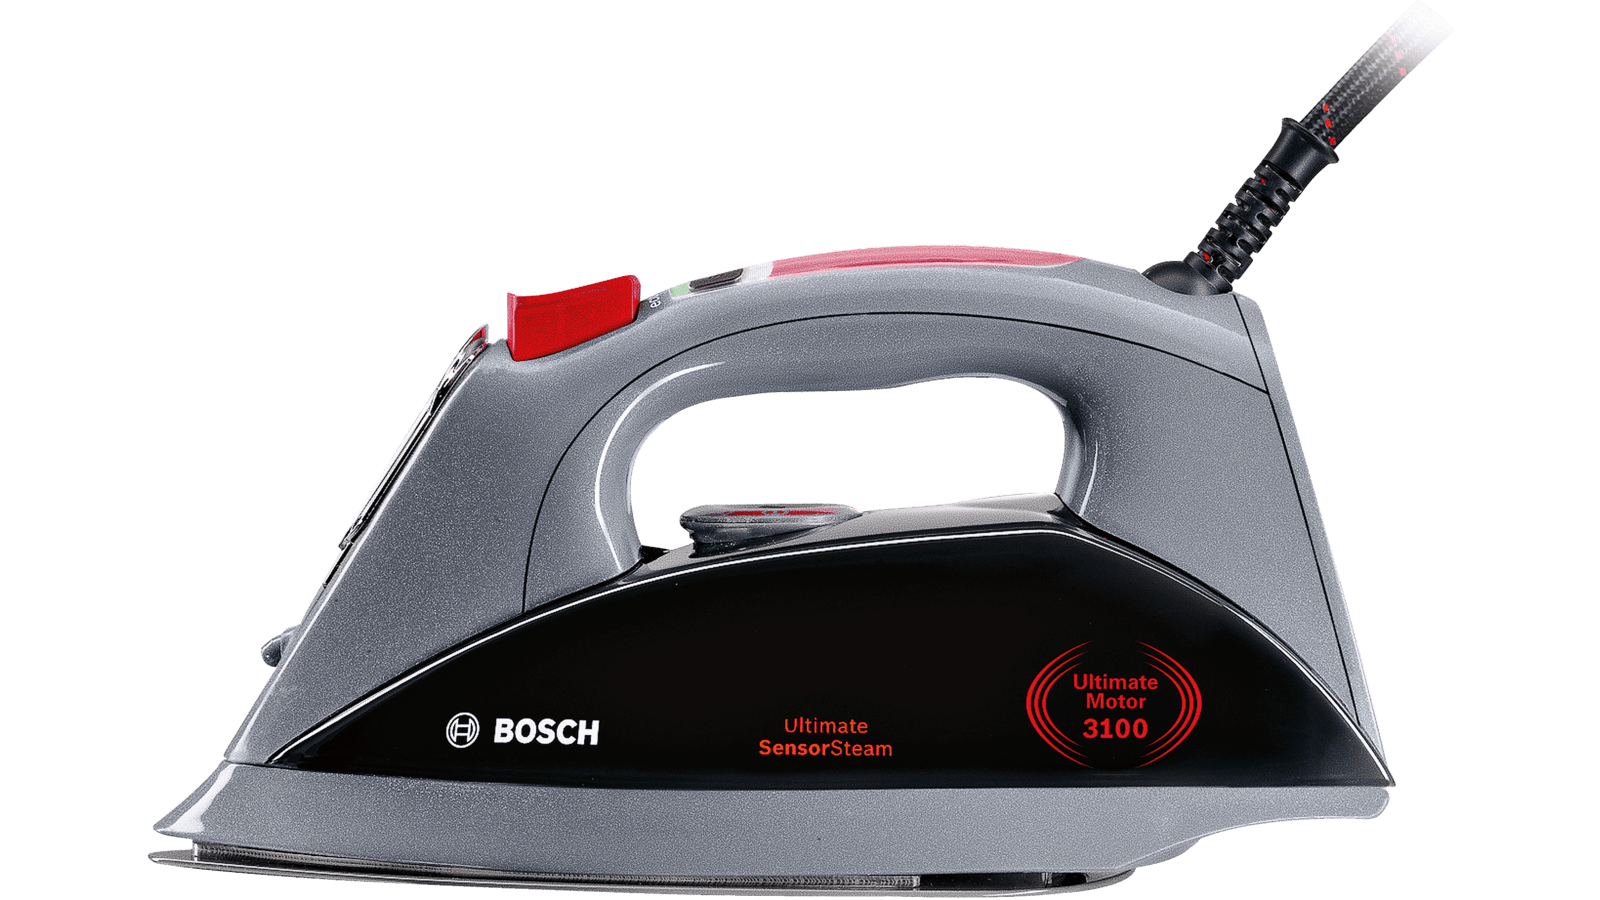 Plancha Bosch TDA2360 2000W